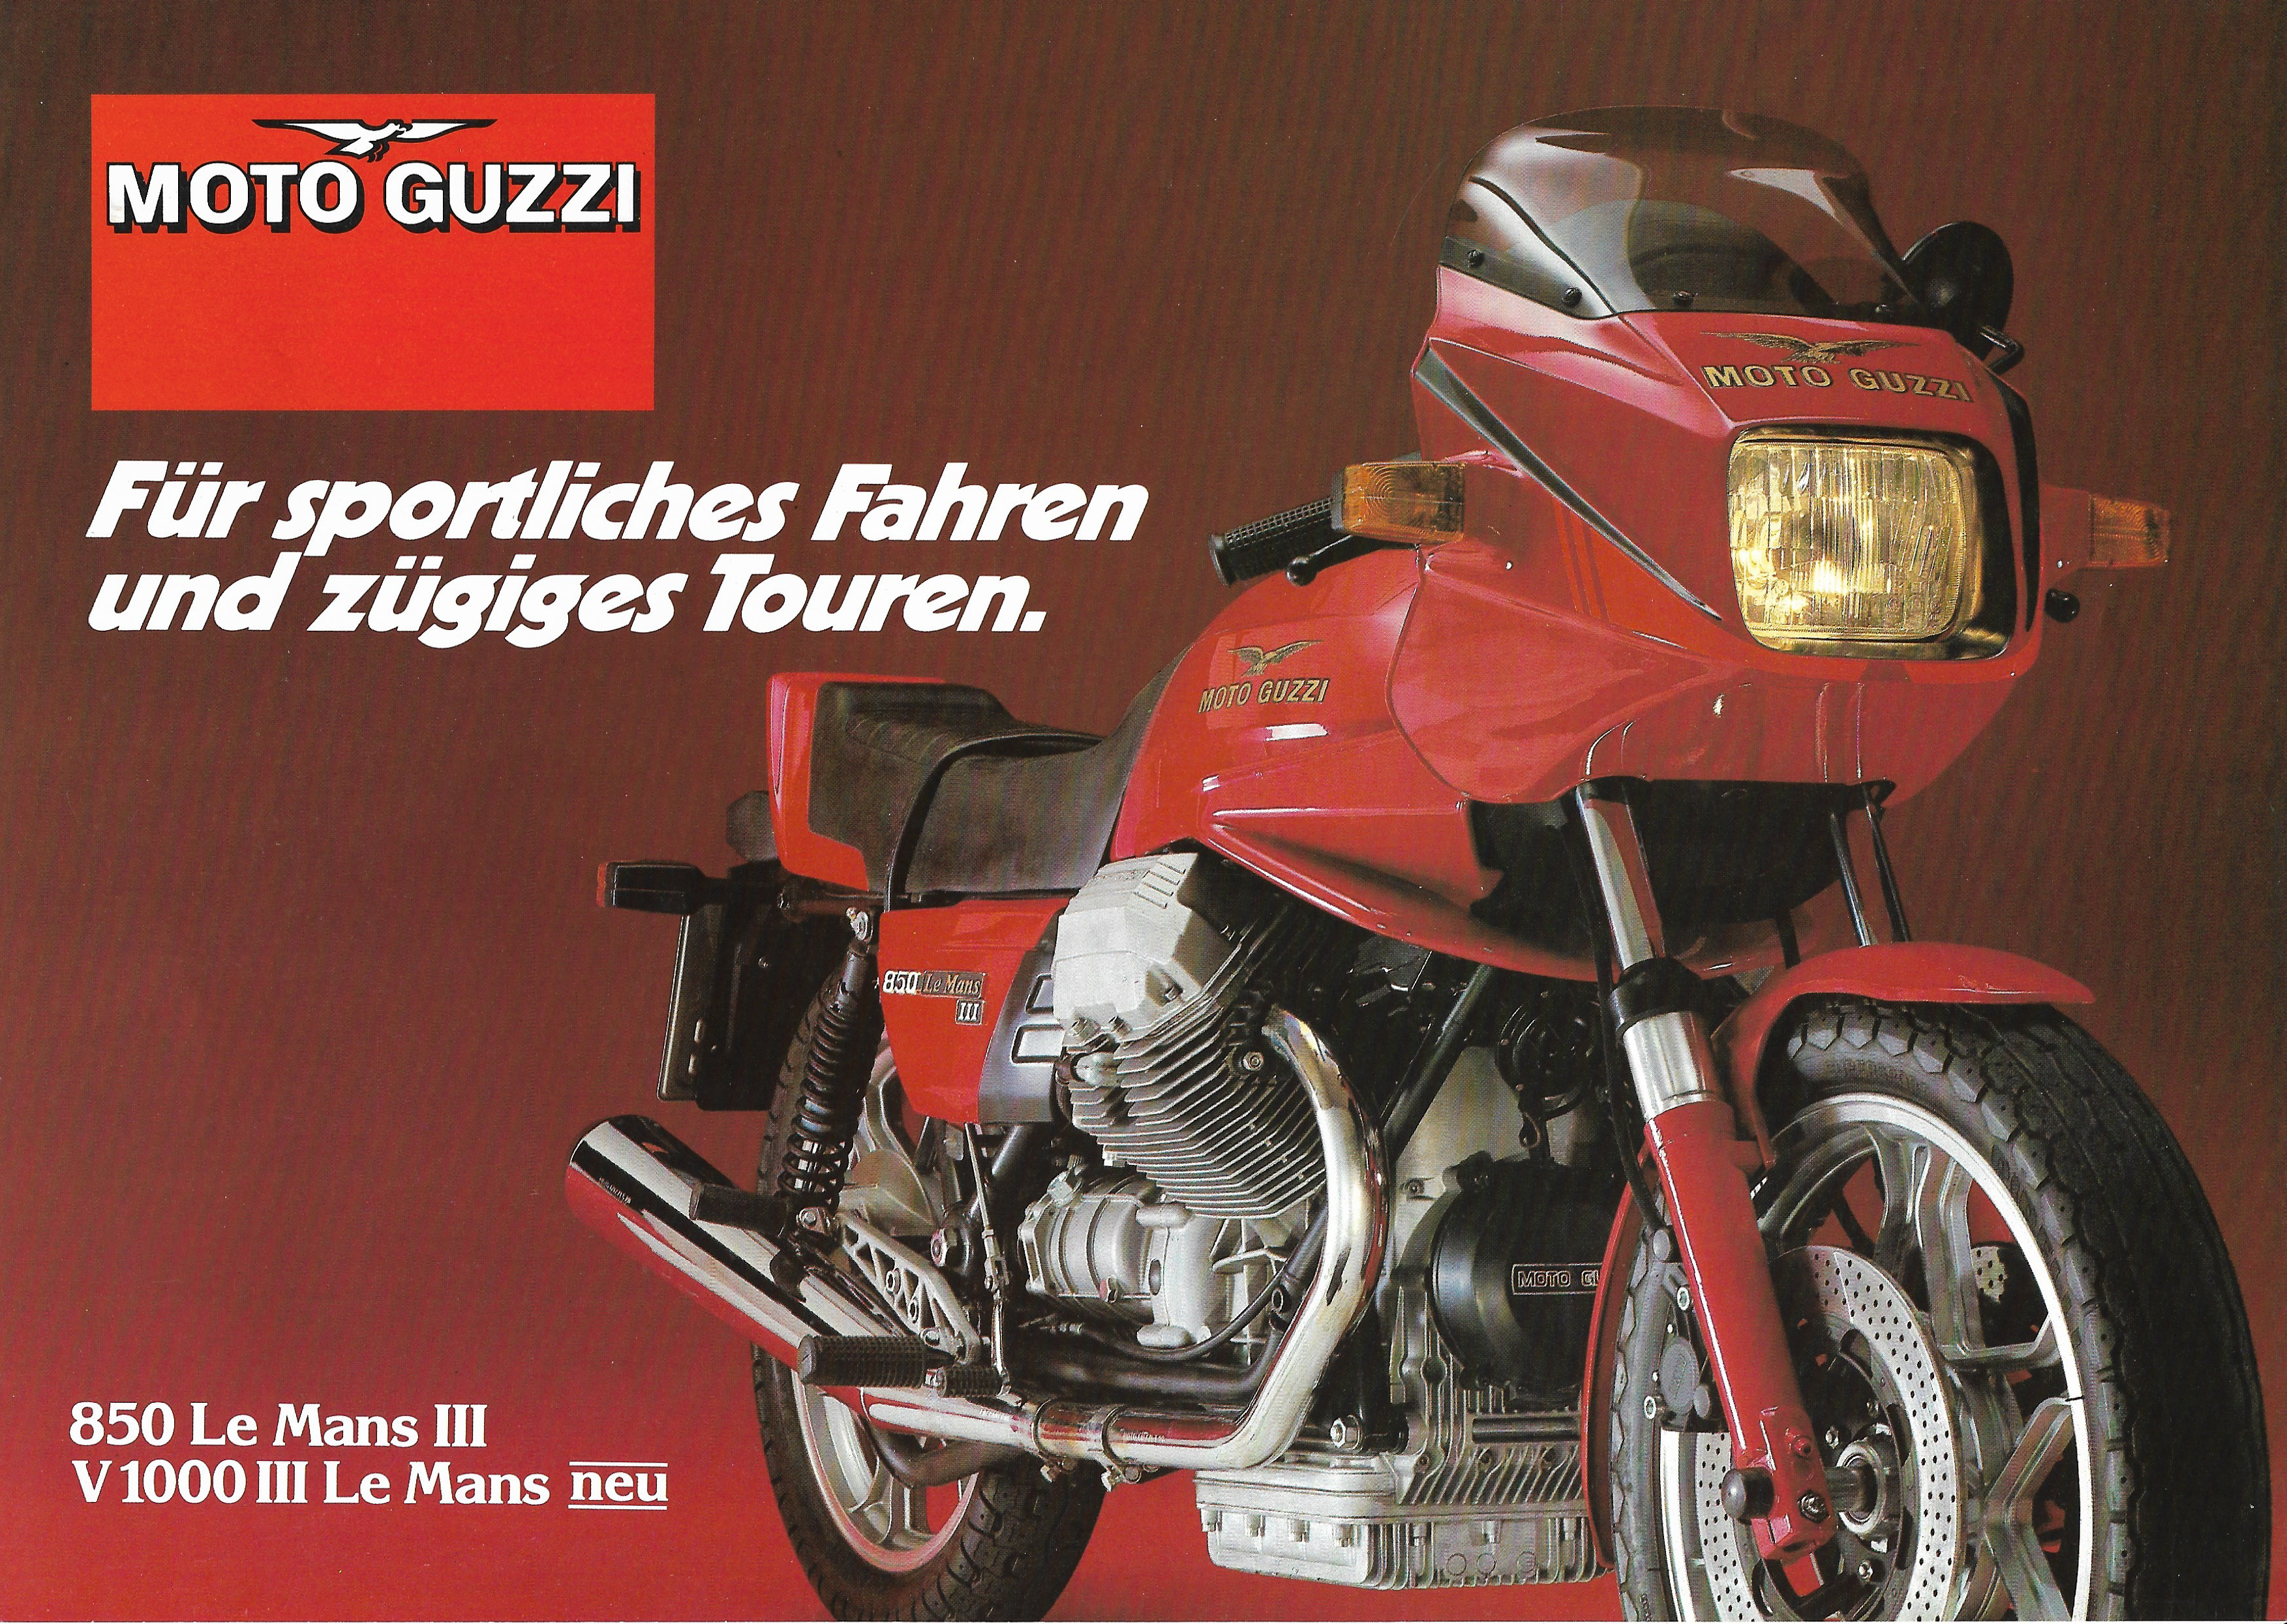 Moto Guzzi factory brochure: Moto Guzzi 850 Le Mans III, V1000 III Le Mans [German]